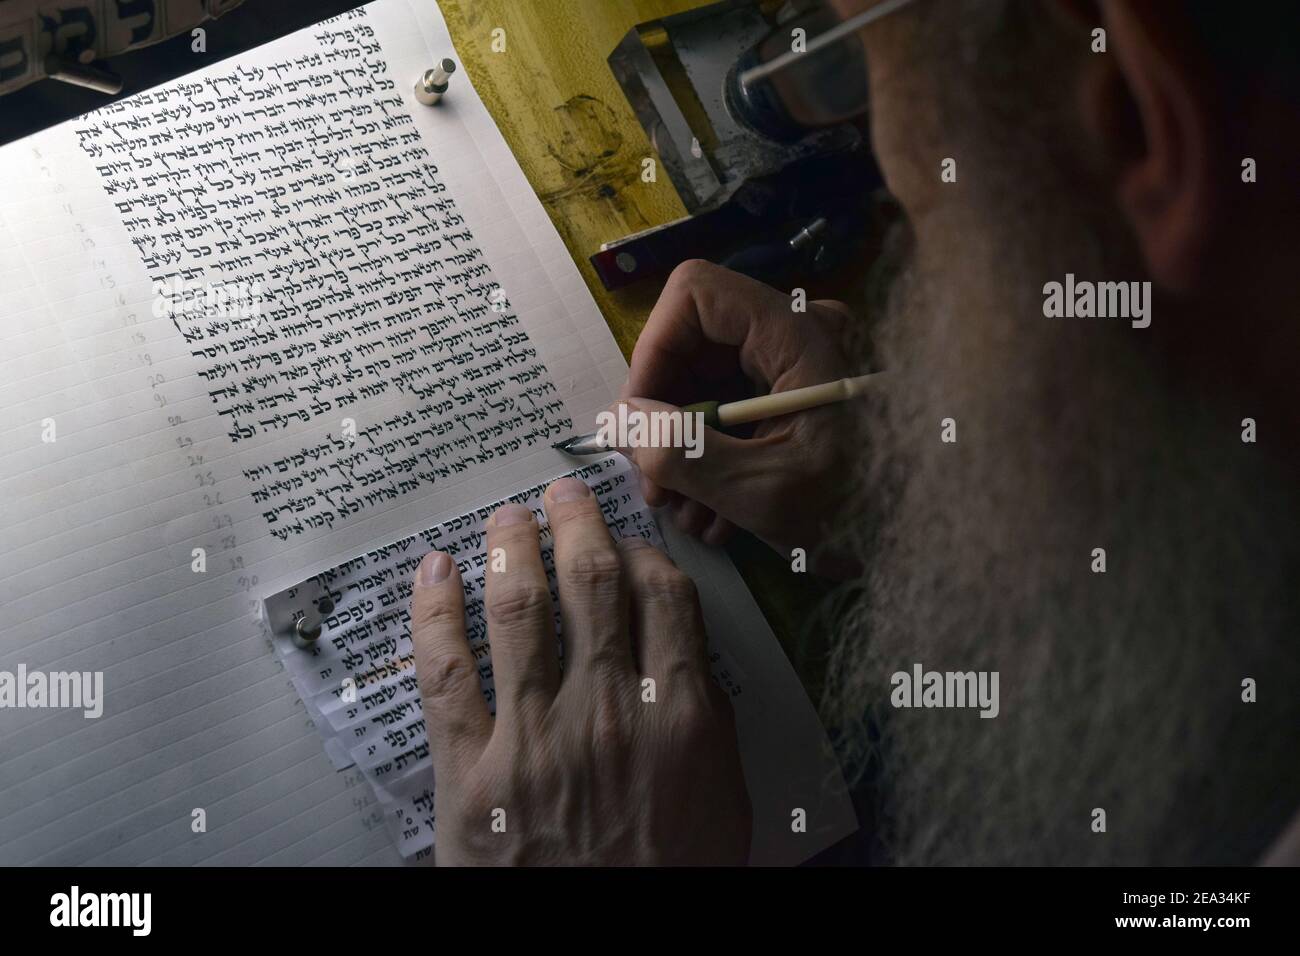 Uno scriba ebreo che scrive una nuova Torah sulla pergamena. Questo segmento è tratto dal libro di Esodo. A Crown Heights, Brooklyn, New York. Foto Stock